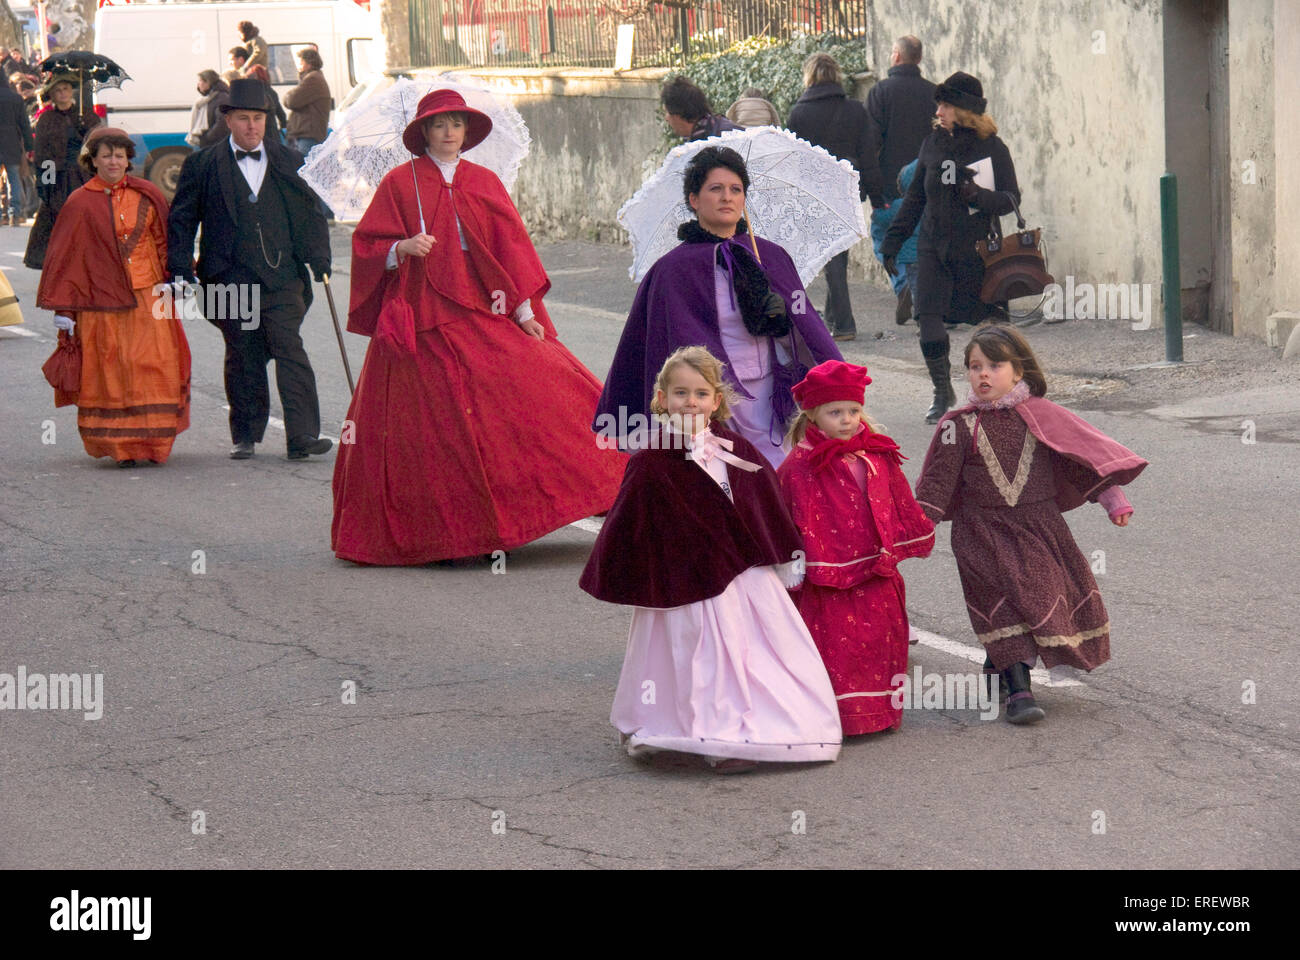 La gente en la época victoriana en trajes tomando parte en un desfile del Día de San Valentín en la aldea de Roquemaure, en el sur de Francia. Foto de stock